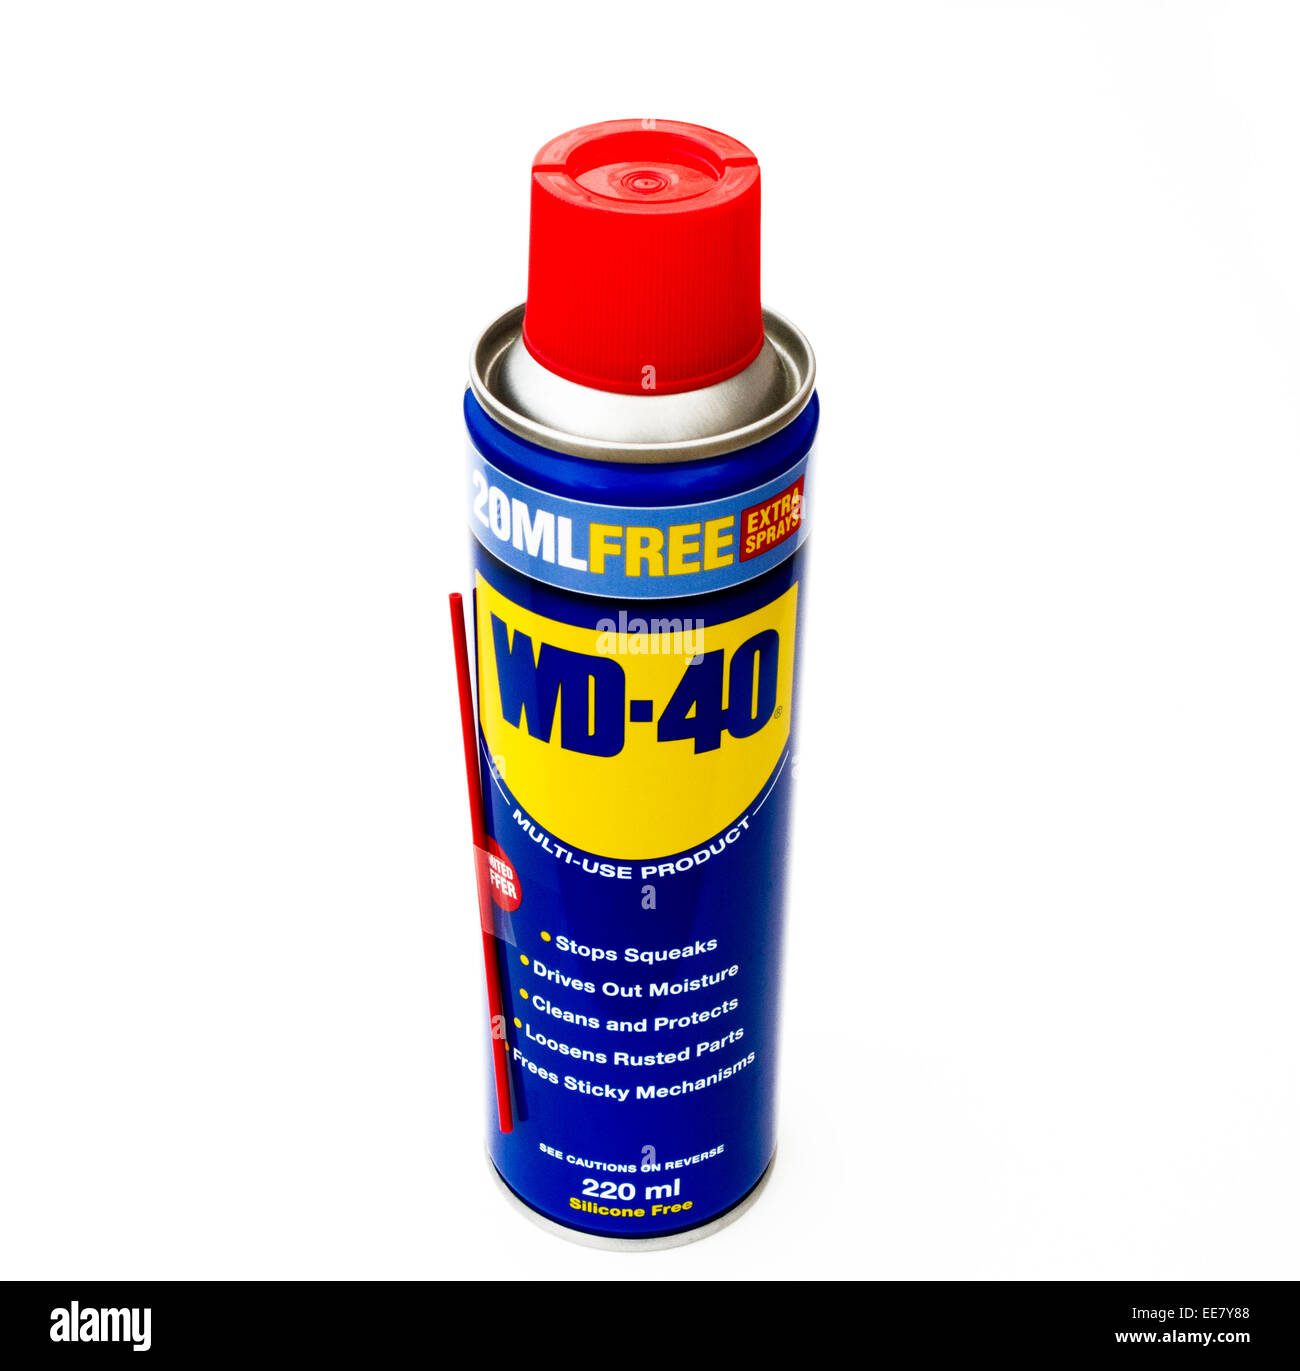 Possibile di WD-40 Lubrificante spray Foto Stock